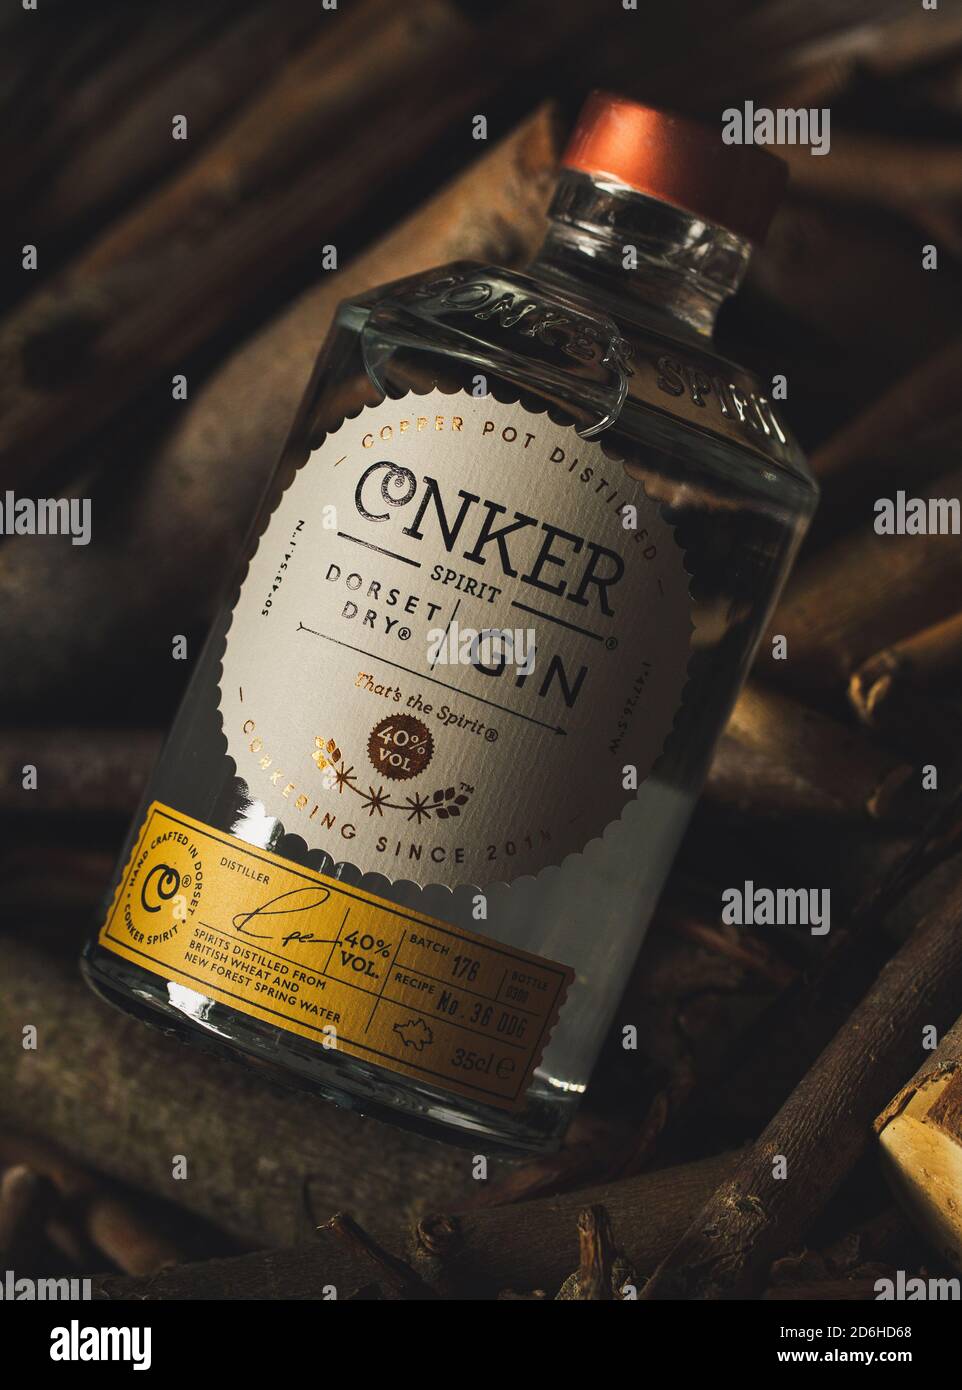 Conker Spirit Dorset Dry Gin bottle Stock Photo